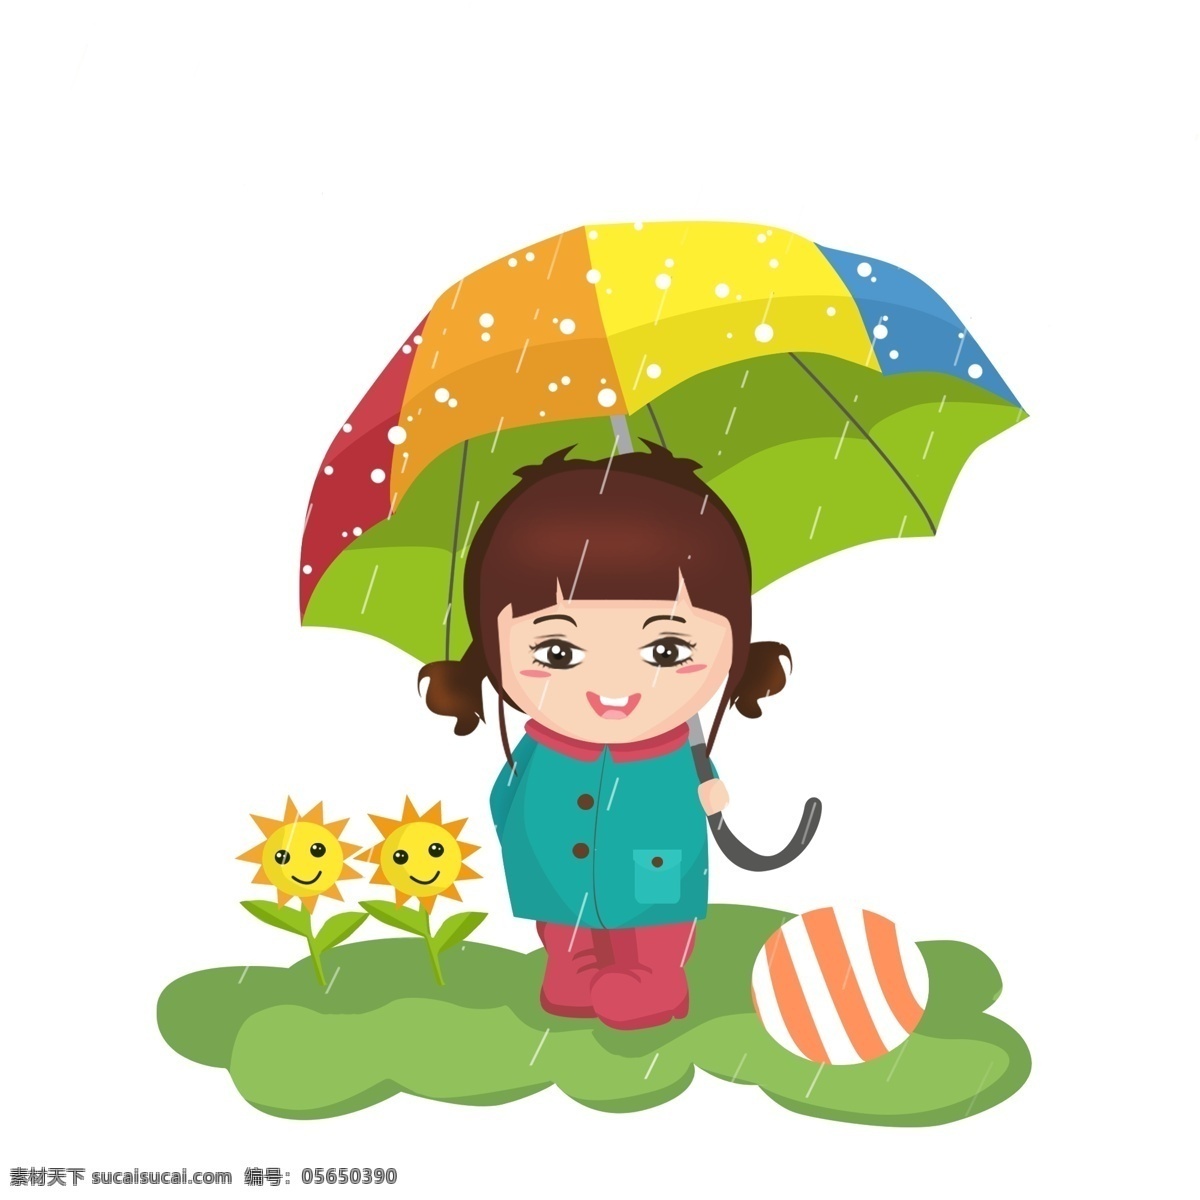 商用 高清 手绘 卡通 人物 打伞 小姑娘 元素 卡通形象 雨天 皮球 雨伞 小葵花 女孩打伞 可商用